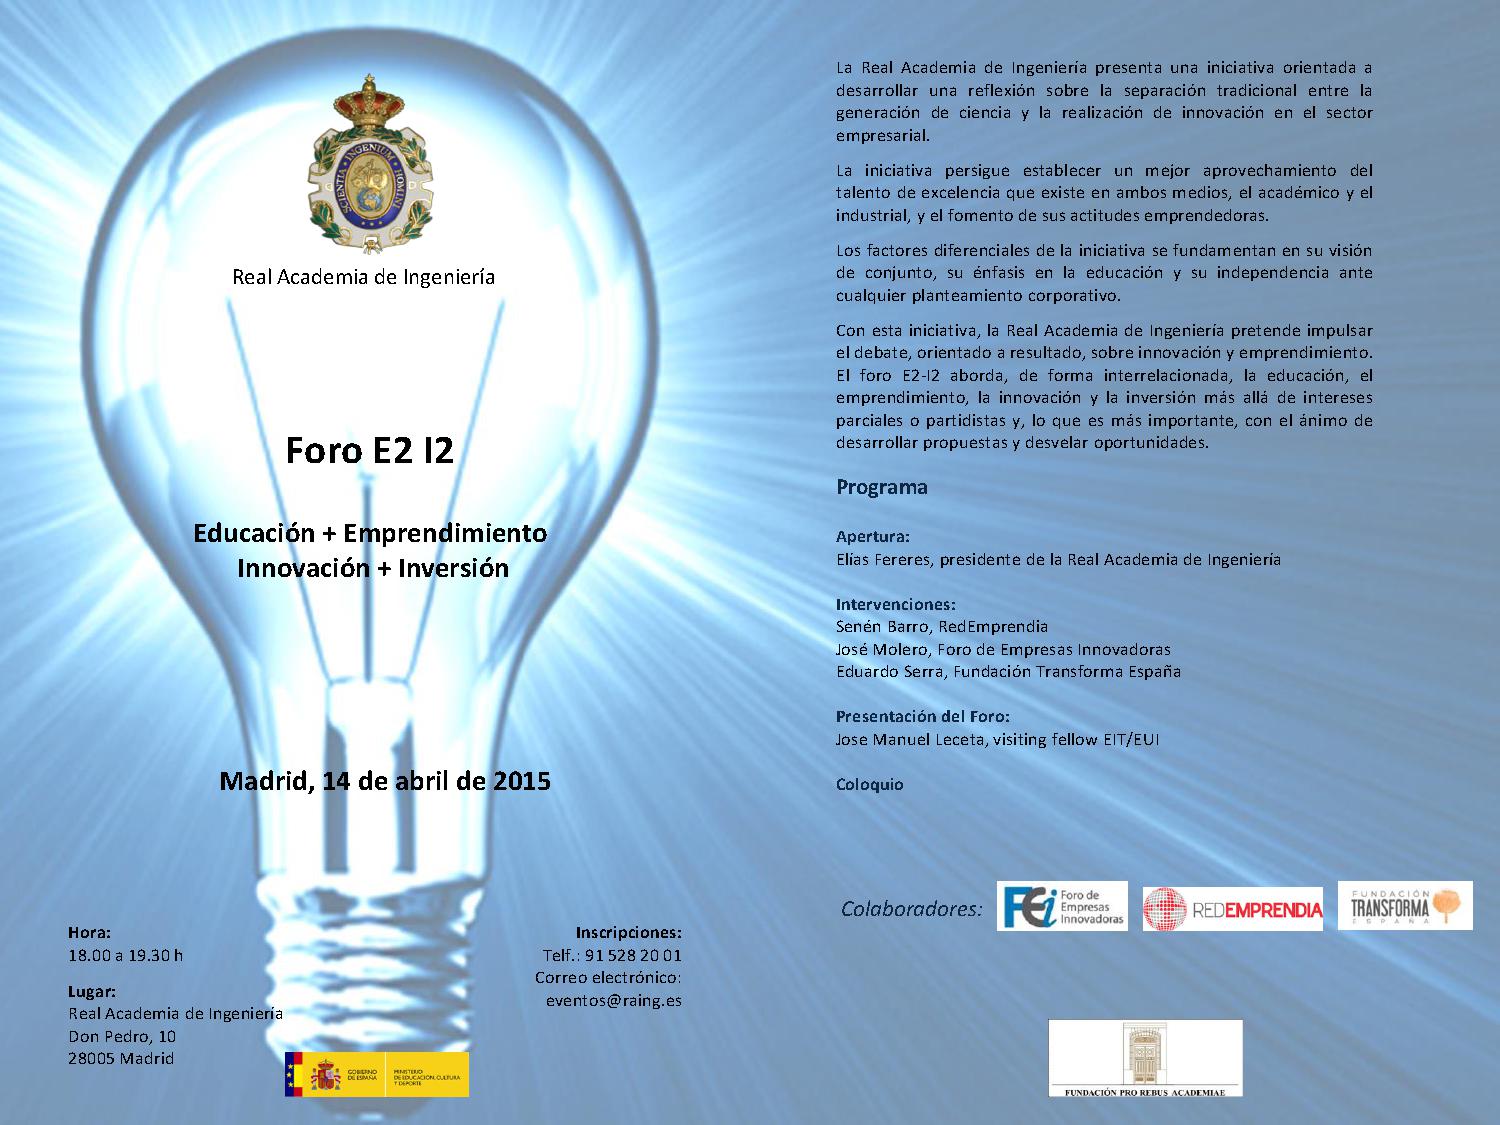 E2 I2 Forum – Education + Entrepreneurship + Innovation + Investment